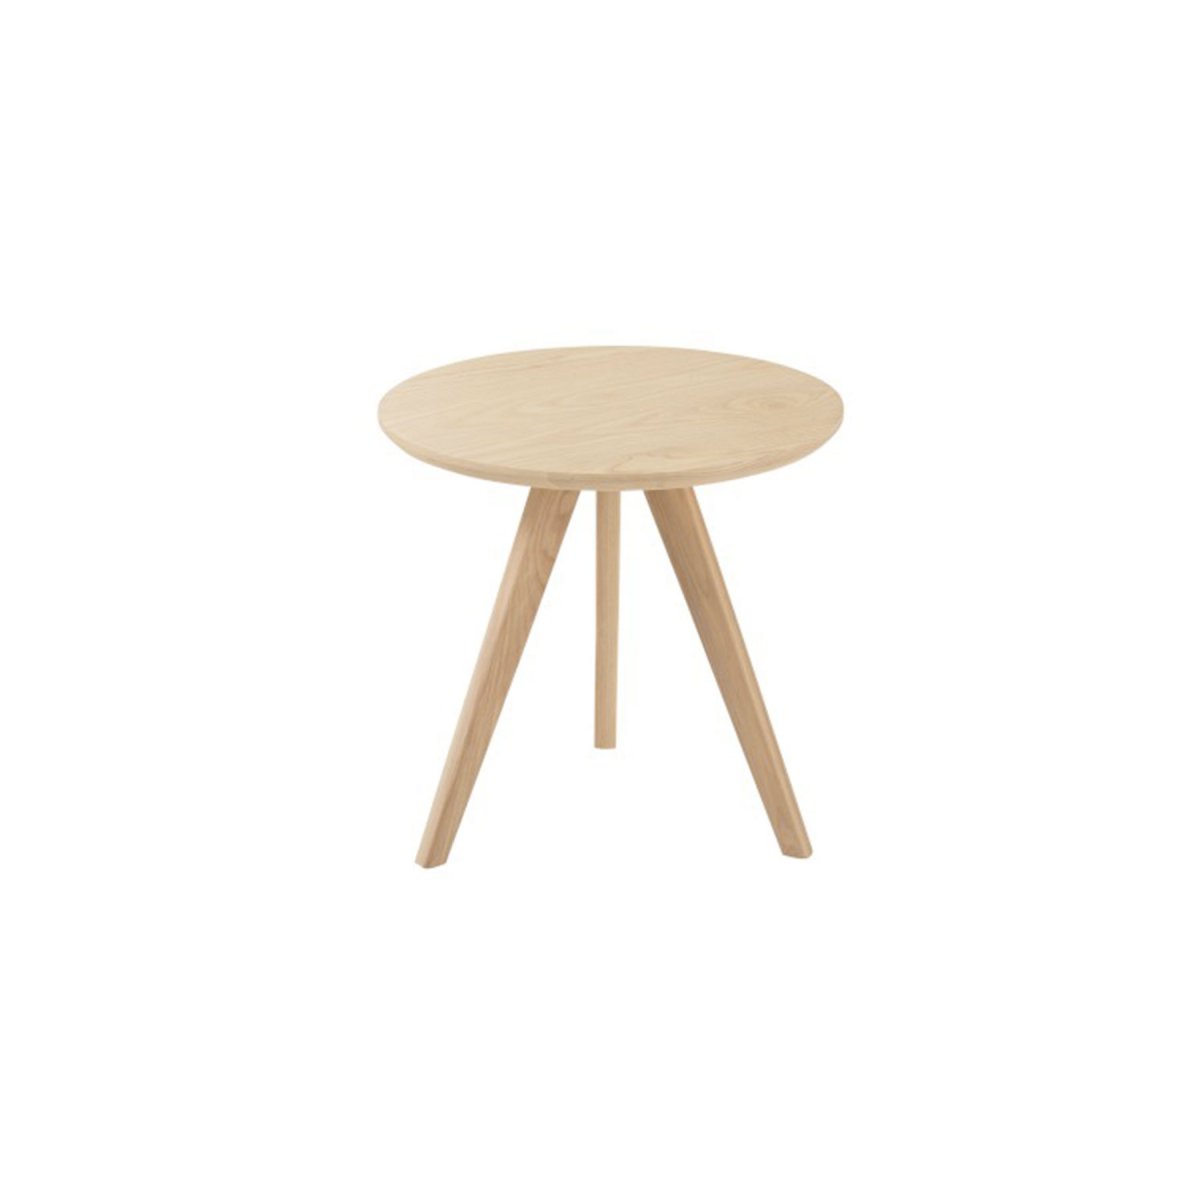 Petite table d'appoint ronde en bois